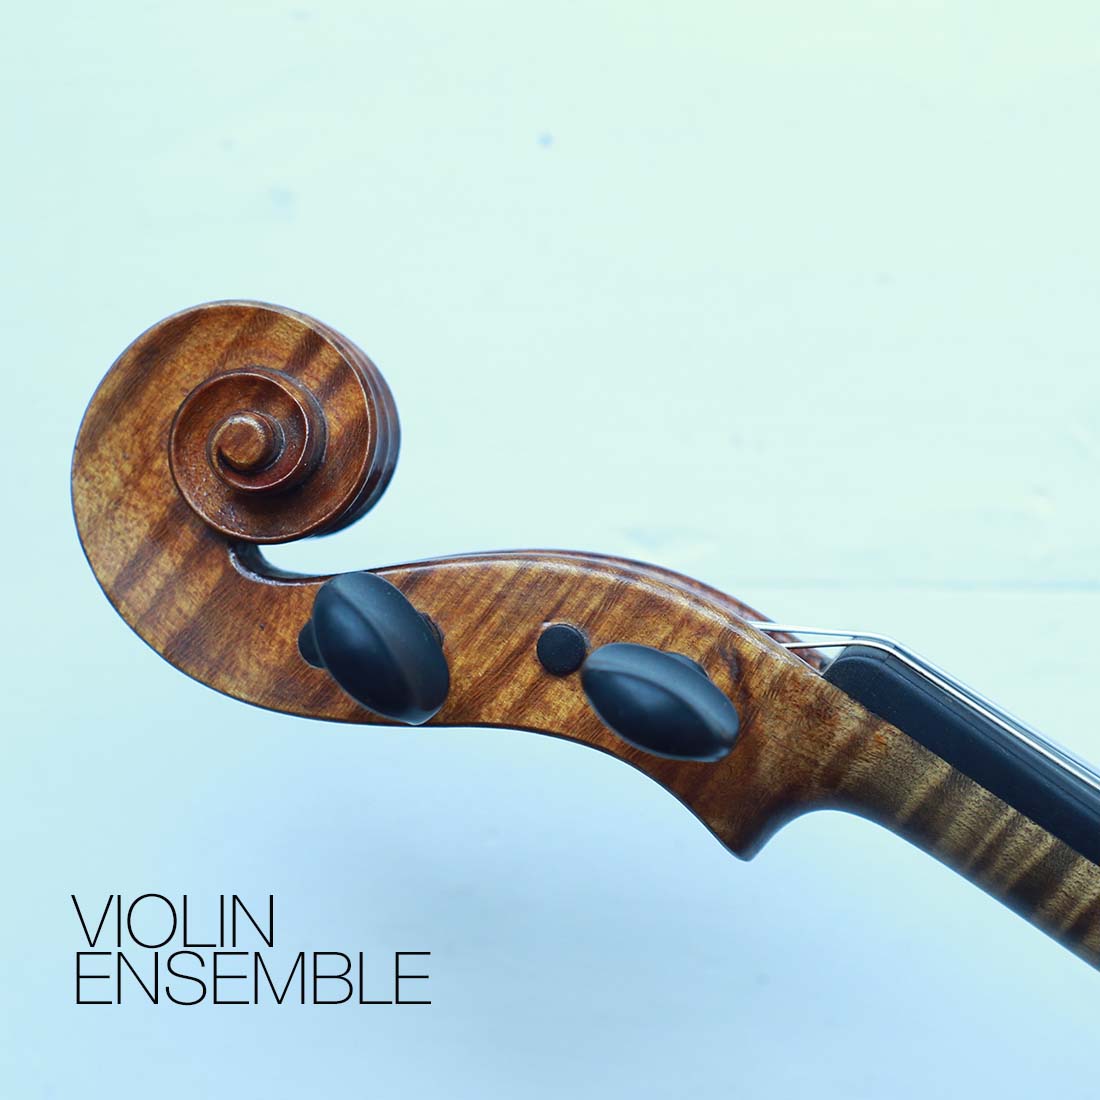 Presenting the Violin Ensemble Sample Library for Decent Sampler & Kontakt